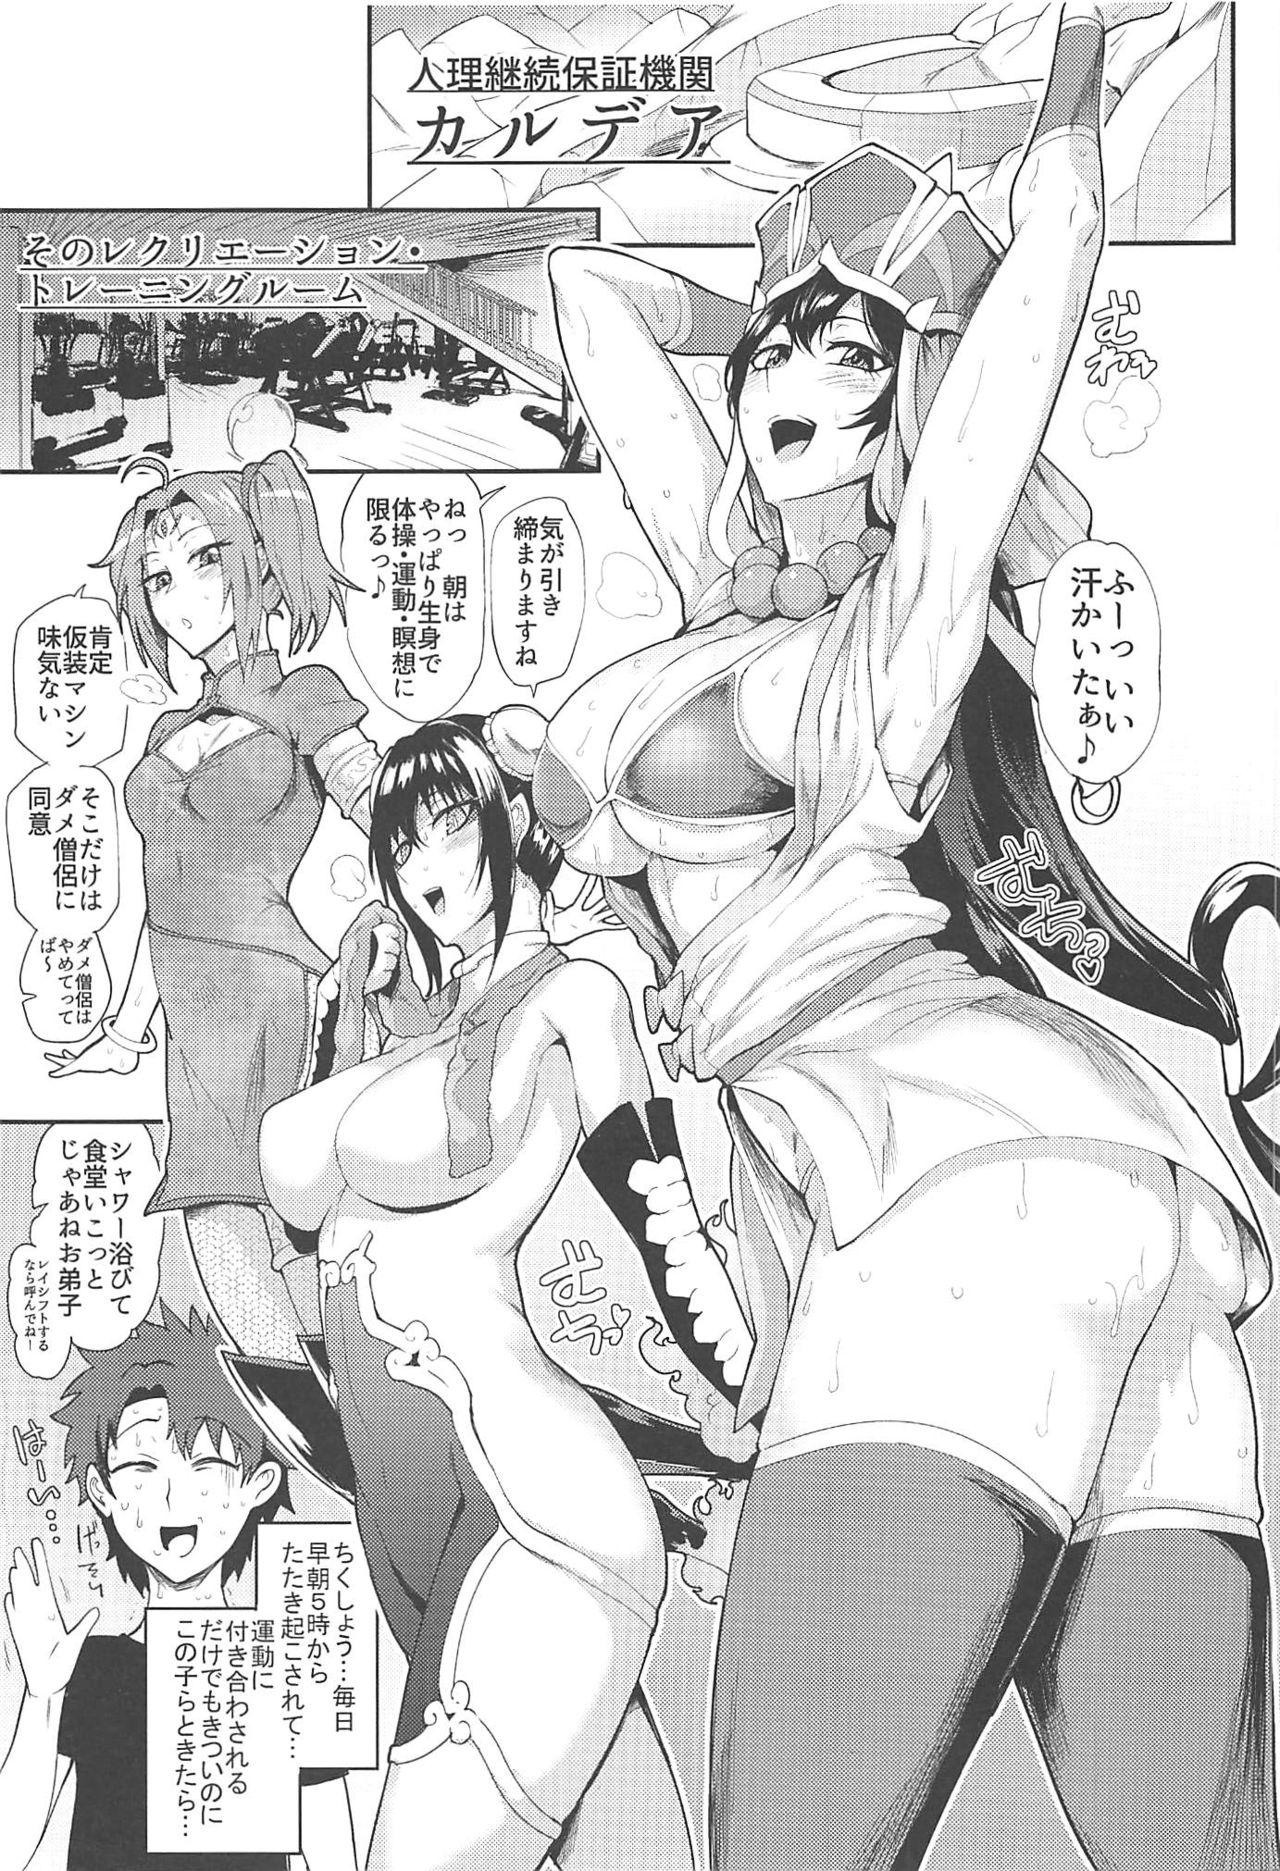 Bigass Housanjou + Totsugasa C96 Omake Gucchan Paper - Fate grand order Horny Sluts - Page 2